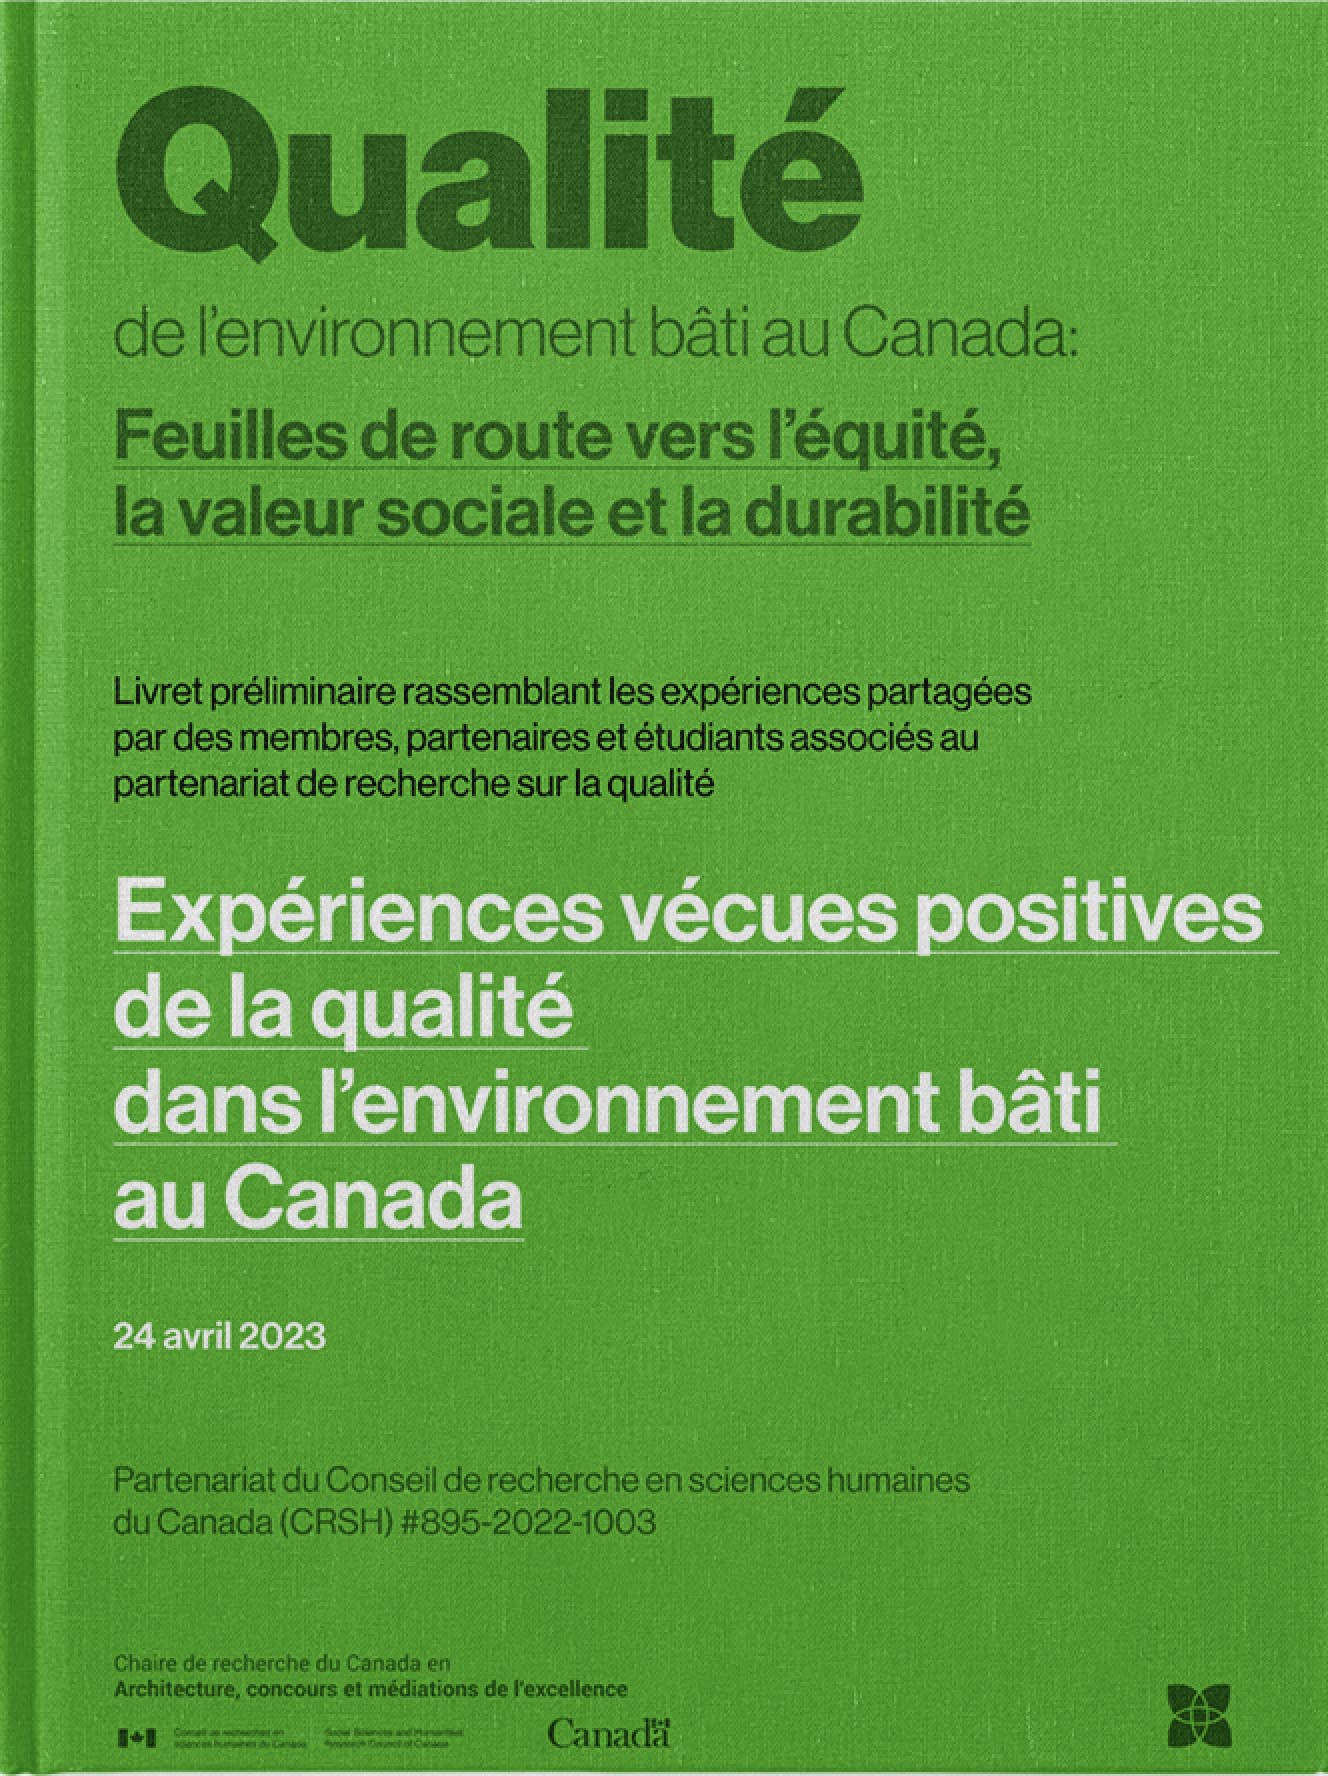 Expériences vécues positives de la qualité dans l’environnement bâti au Canada. Livret rassemblant les expériences partagées par des membres, partenaires et étudiants associés au partenariat de recherche sur la qualité (CRSH #895-2022-1003). Sous la direction de Jean-Pierre Chupin, 2023, Université de Montréal. 272 pages.